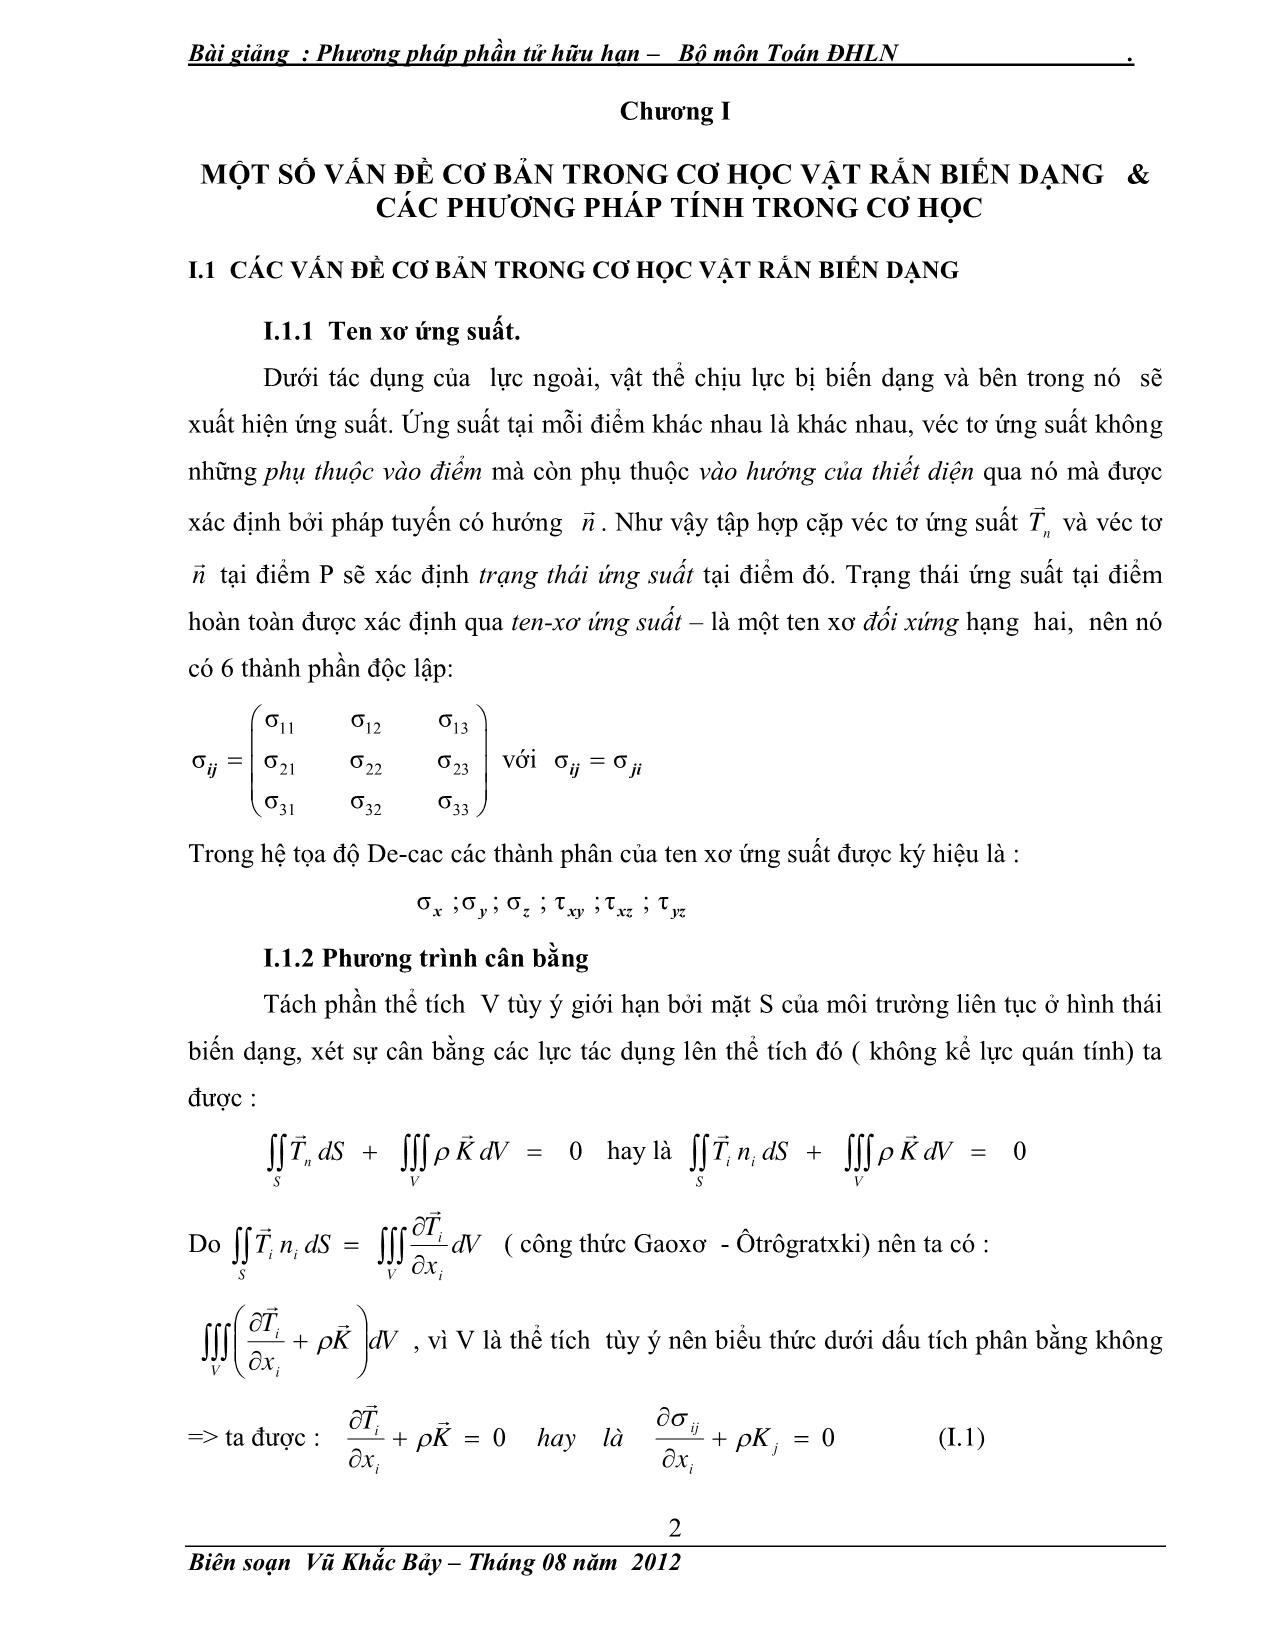 Giáo trình Phương pháp số (Phương pháp phần tử hữu hạn) trang 3